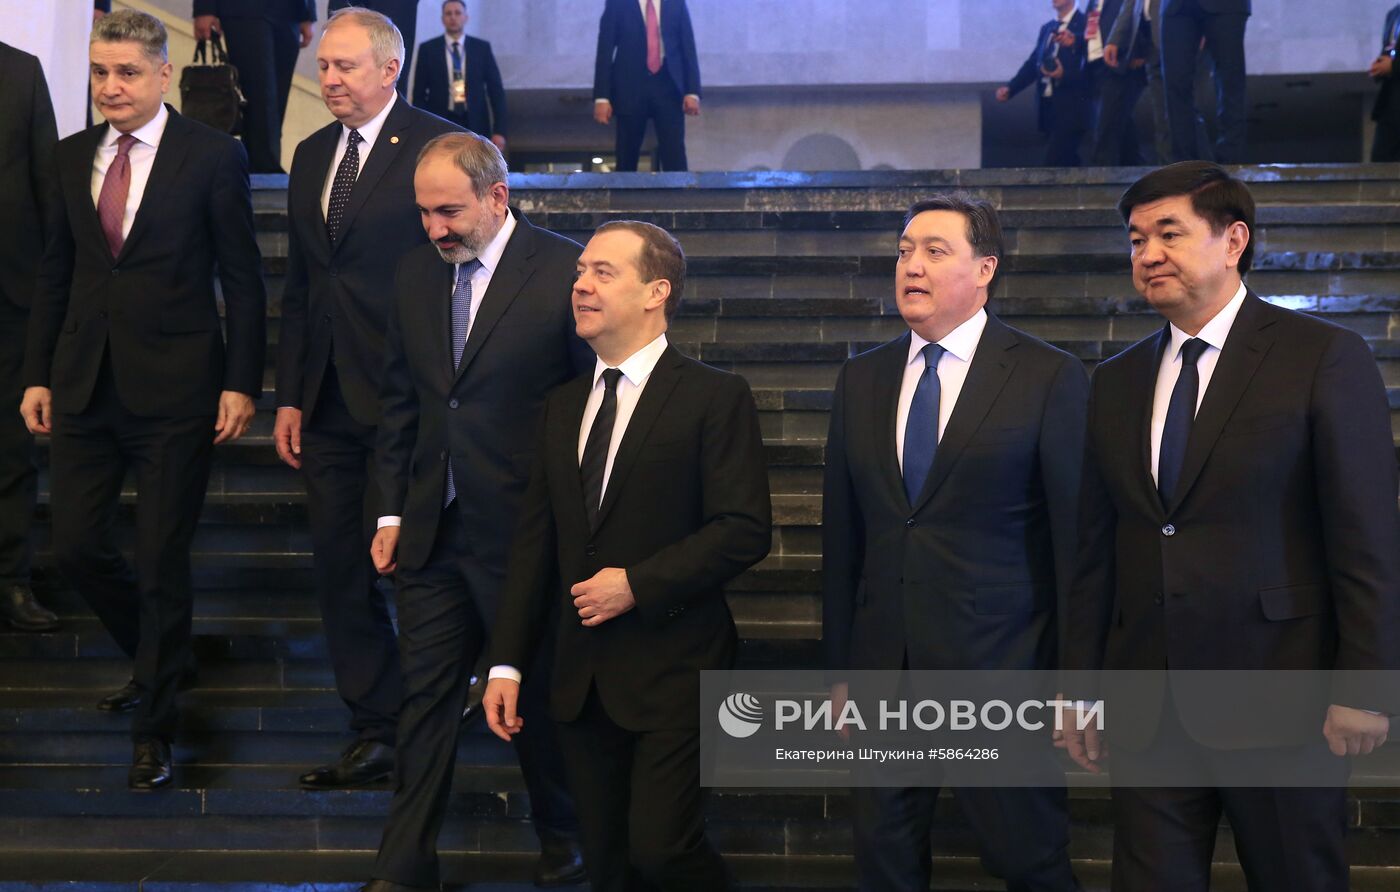 Визит премьер-министра РФ Д. Медведева в Армению. День второй